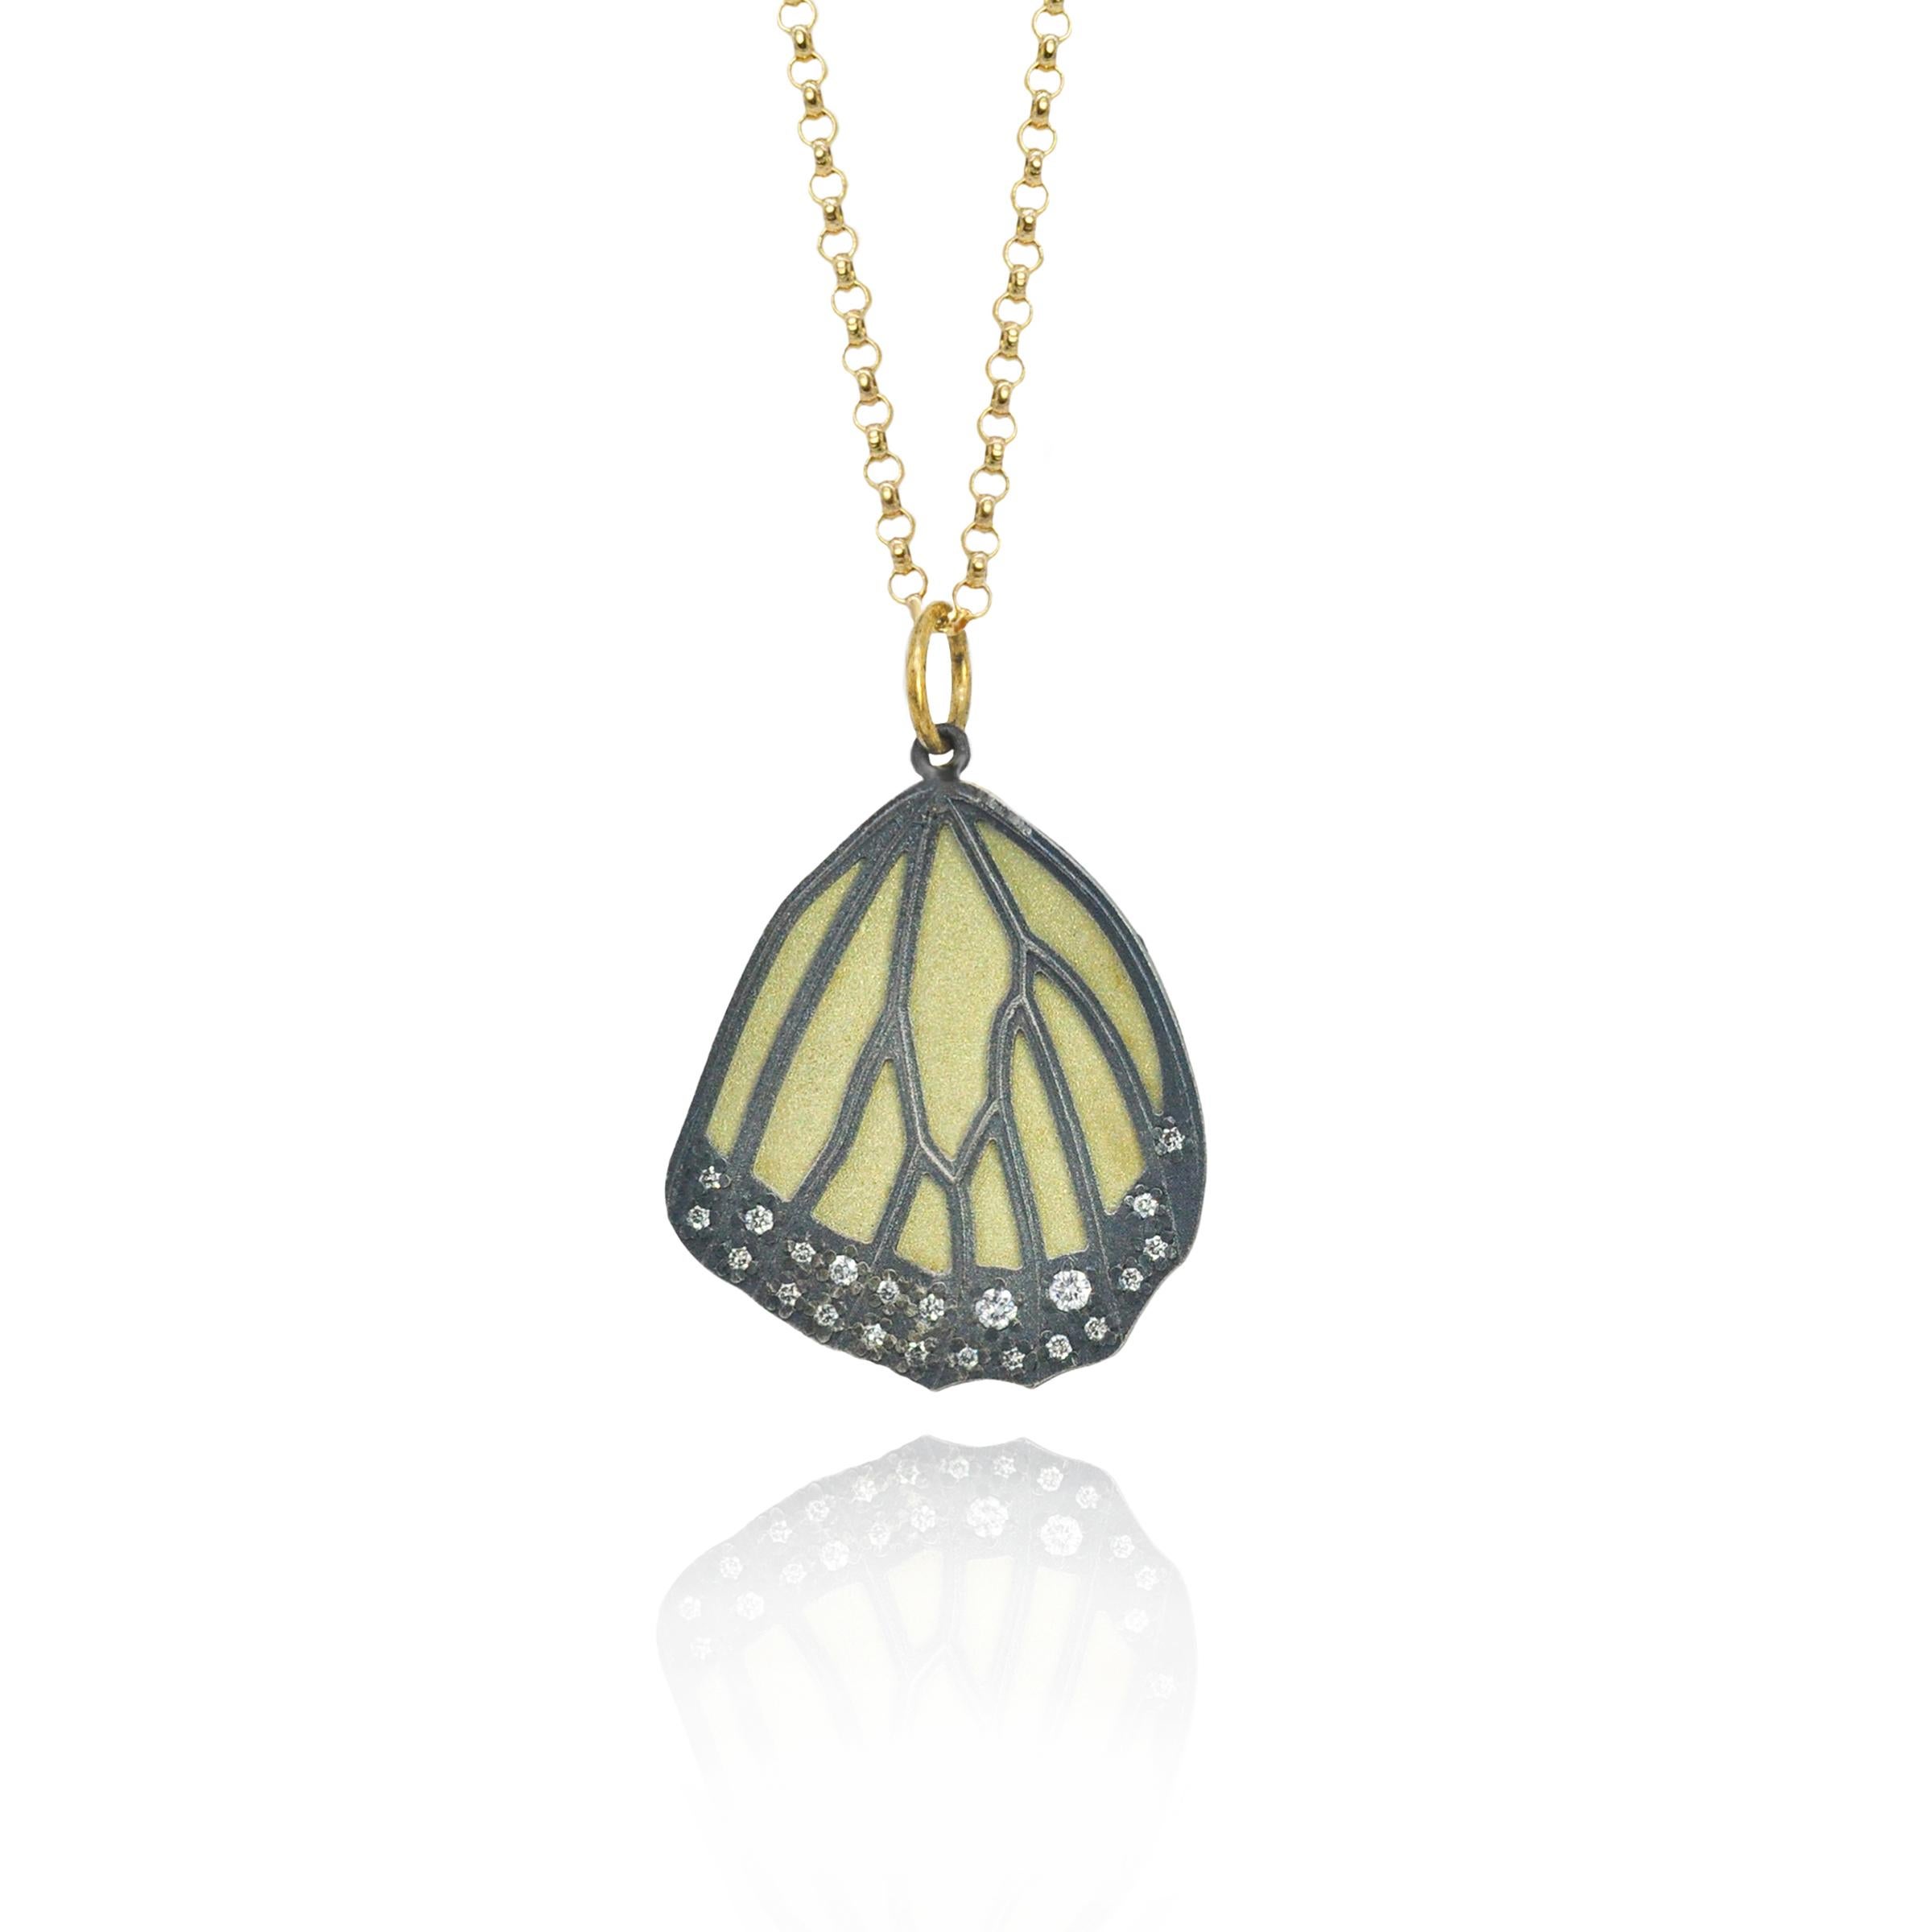 Véritable signature de Rebecca Myers Design, nos ailes de papillon monarque s'inspirent des chefs-d'œuvre de la nature et sont fabriquées à la main avec des matériaux de la plus haute qualité. L'argent sterling oxydé est superposé à l'or jaune 18